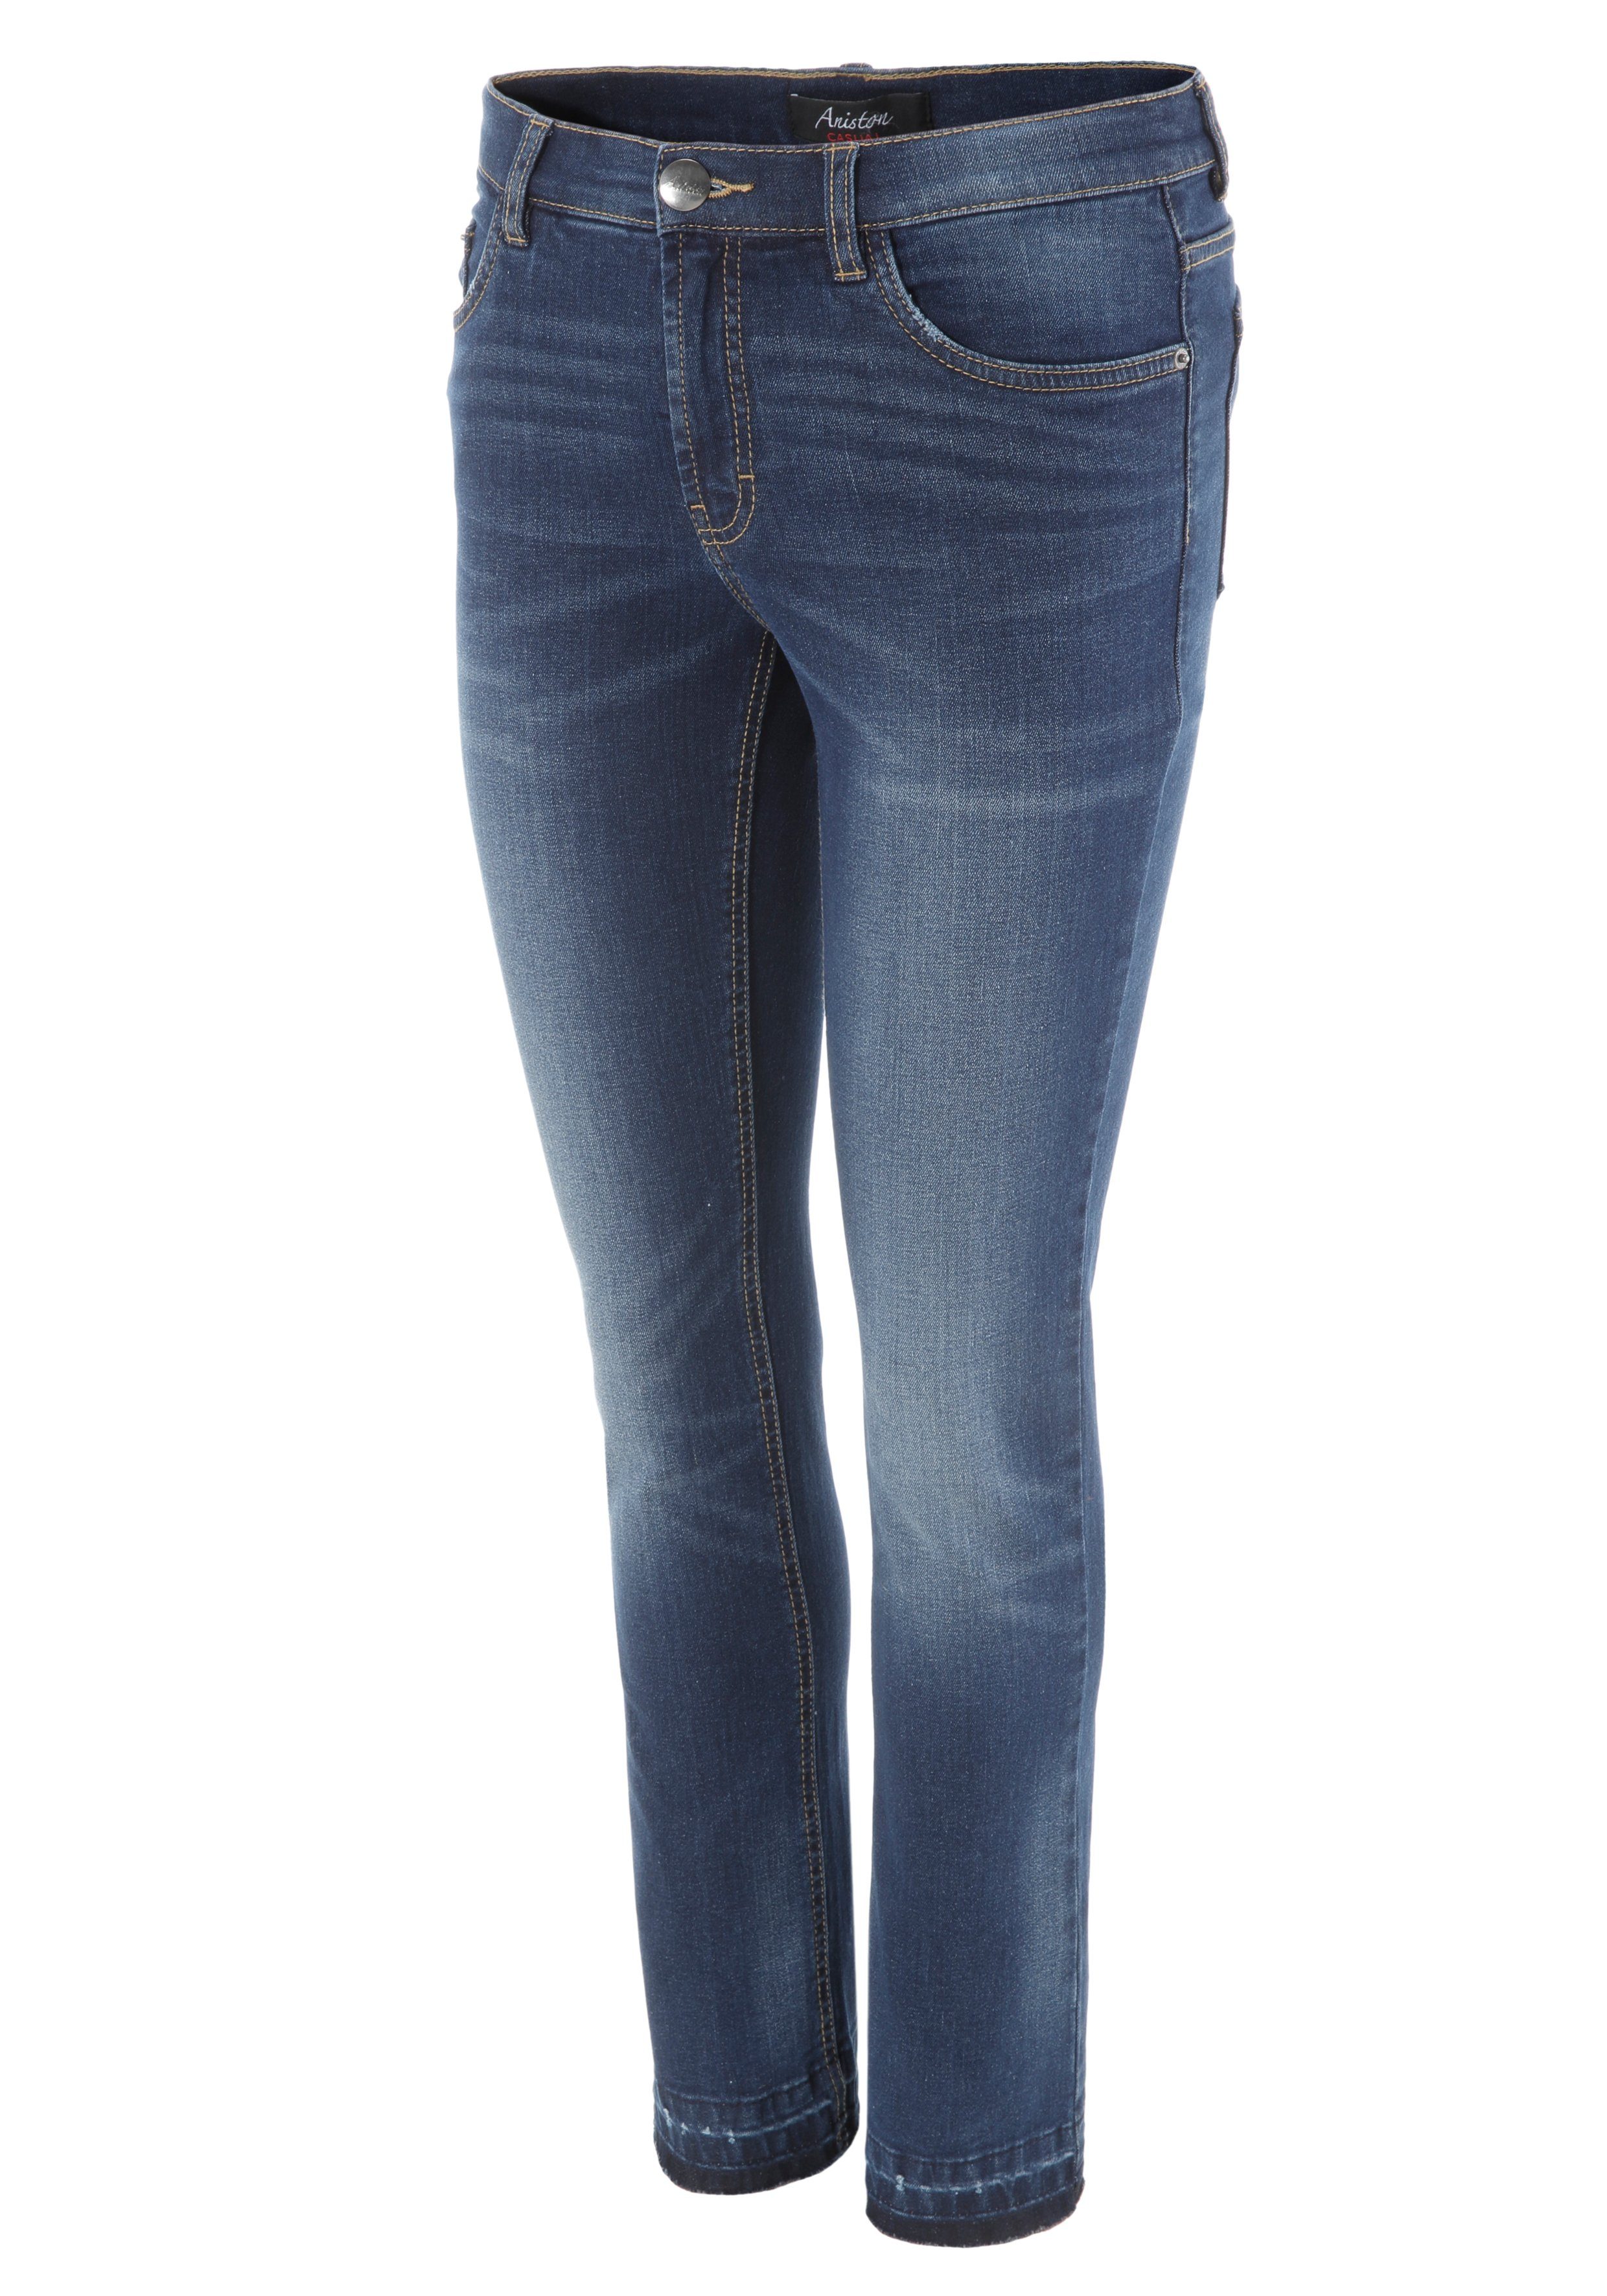 Aniston CASUAL Bootcut-Jeans am ausgefranstem Waschung Beinabschluss leicht trendiger mit